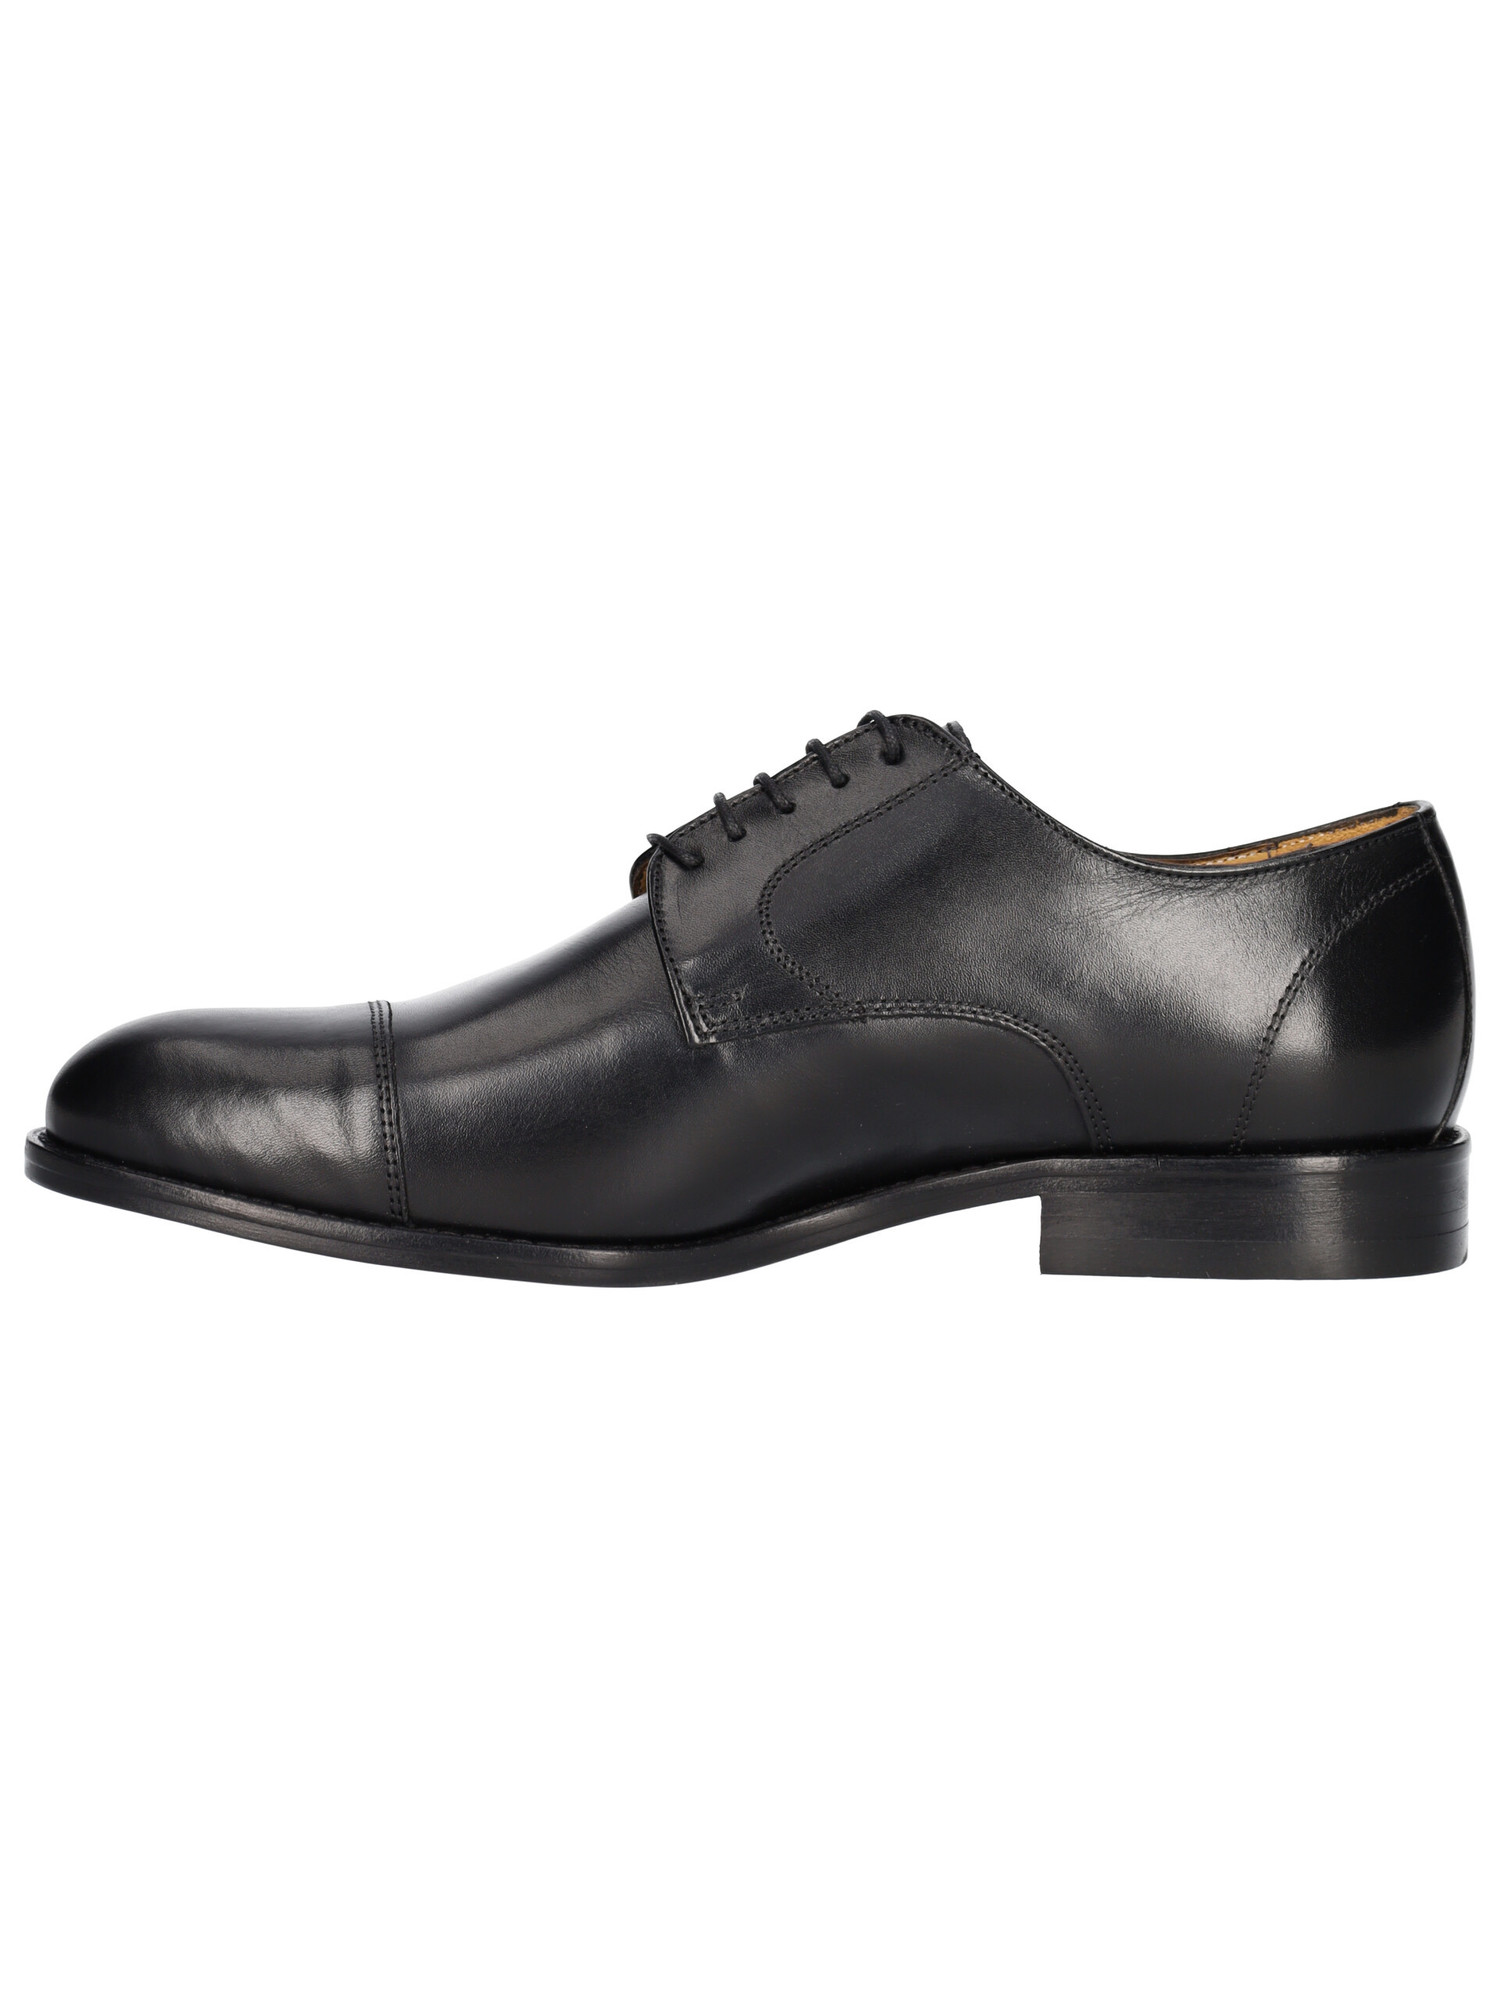 scarpa-elegante-mercante-fiorentini-da-uomo-nera-25f576